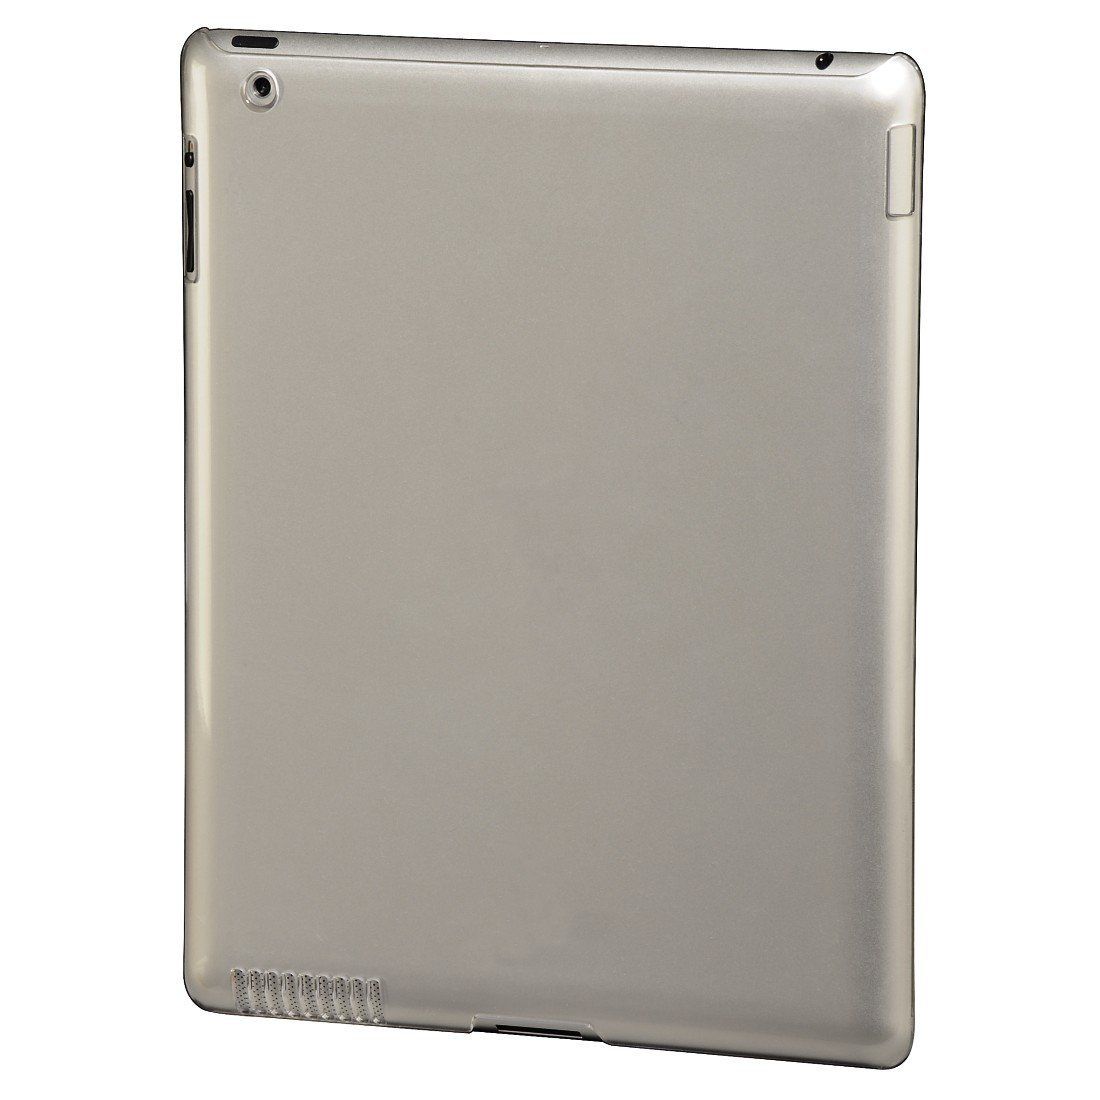 Hama Schutz Cover Hard Case für Apple iPad 2 + 3 2G 3G Schutz Hülle